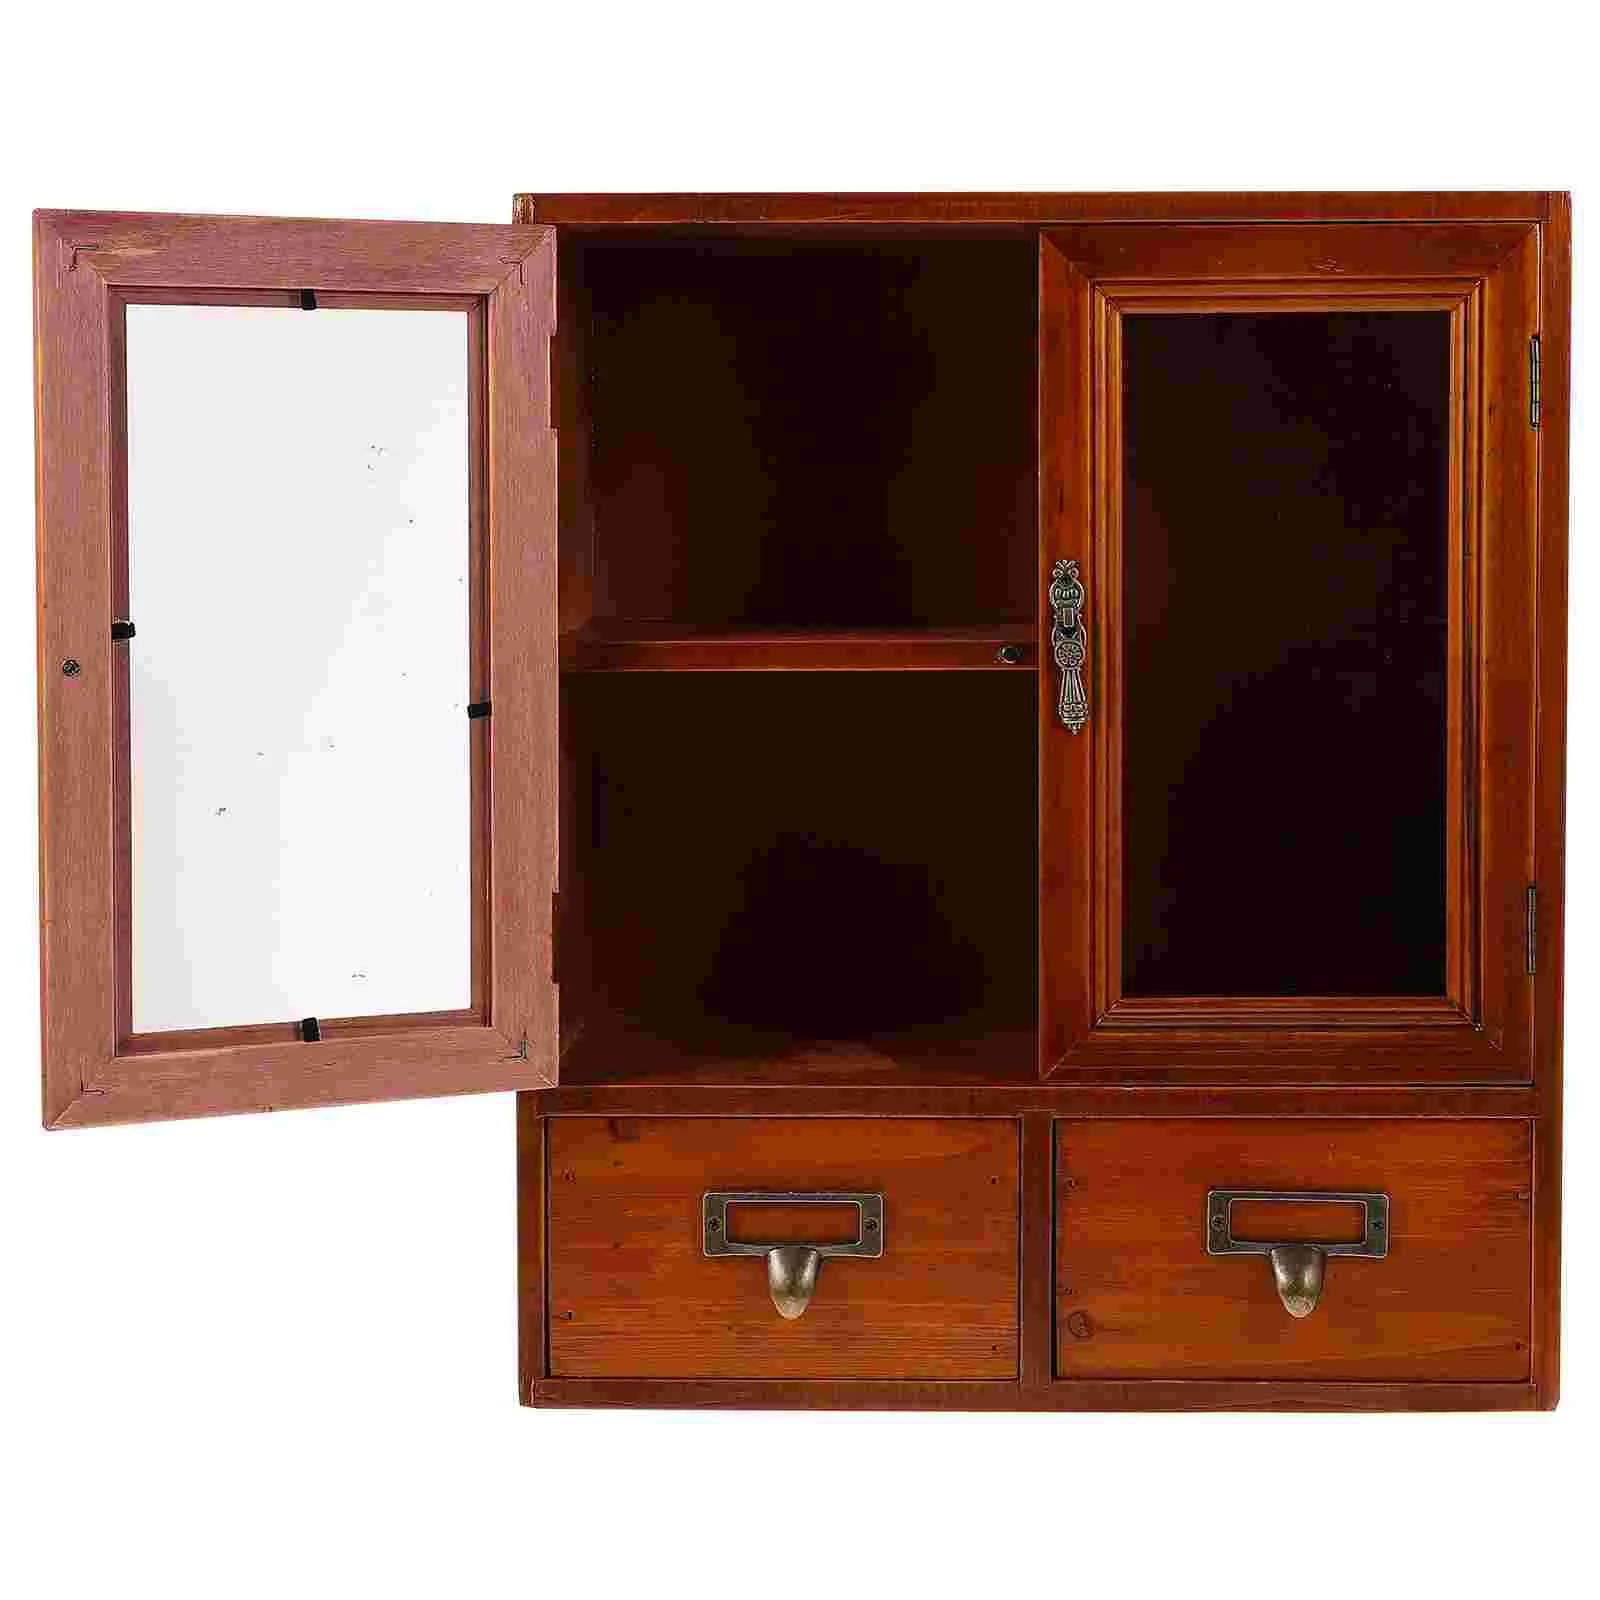 

Деревянный кухонный шкаф, настенный шкаф для хранения, двойные двери, шкаф, витрина, мебель